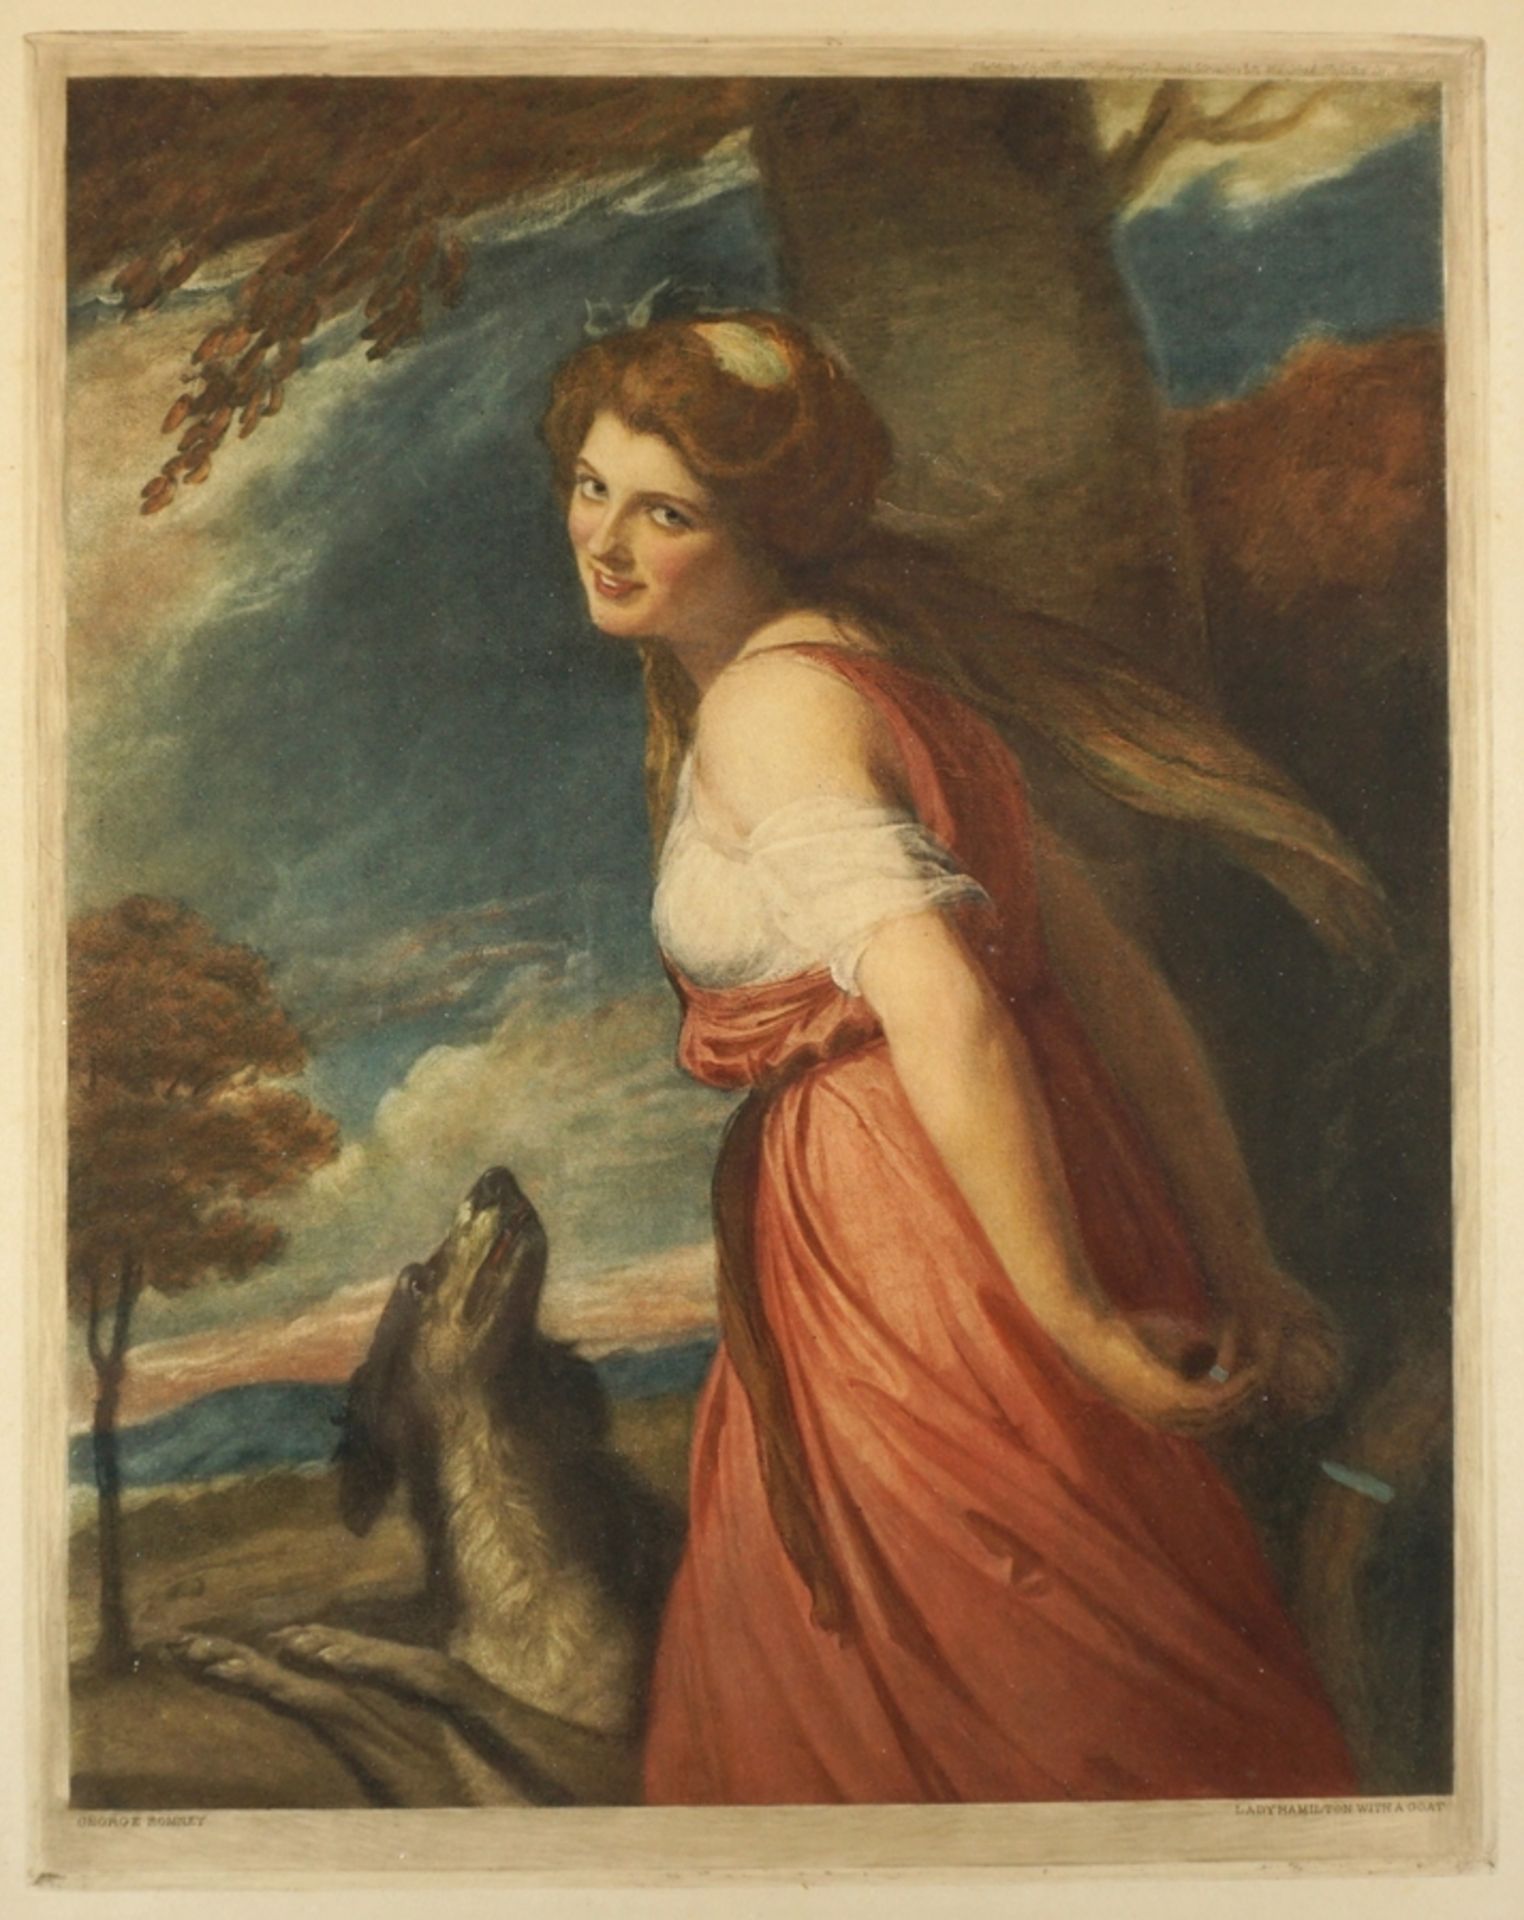 Farblithographie nach George Romney, "Lady Hamilton mit Hund", 19. Jh. - Bild 2 aus 4